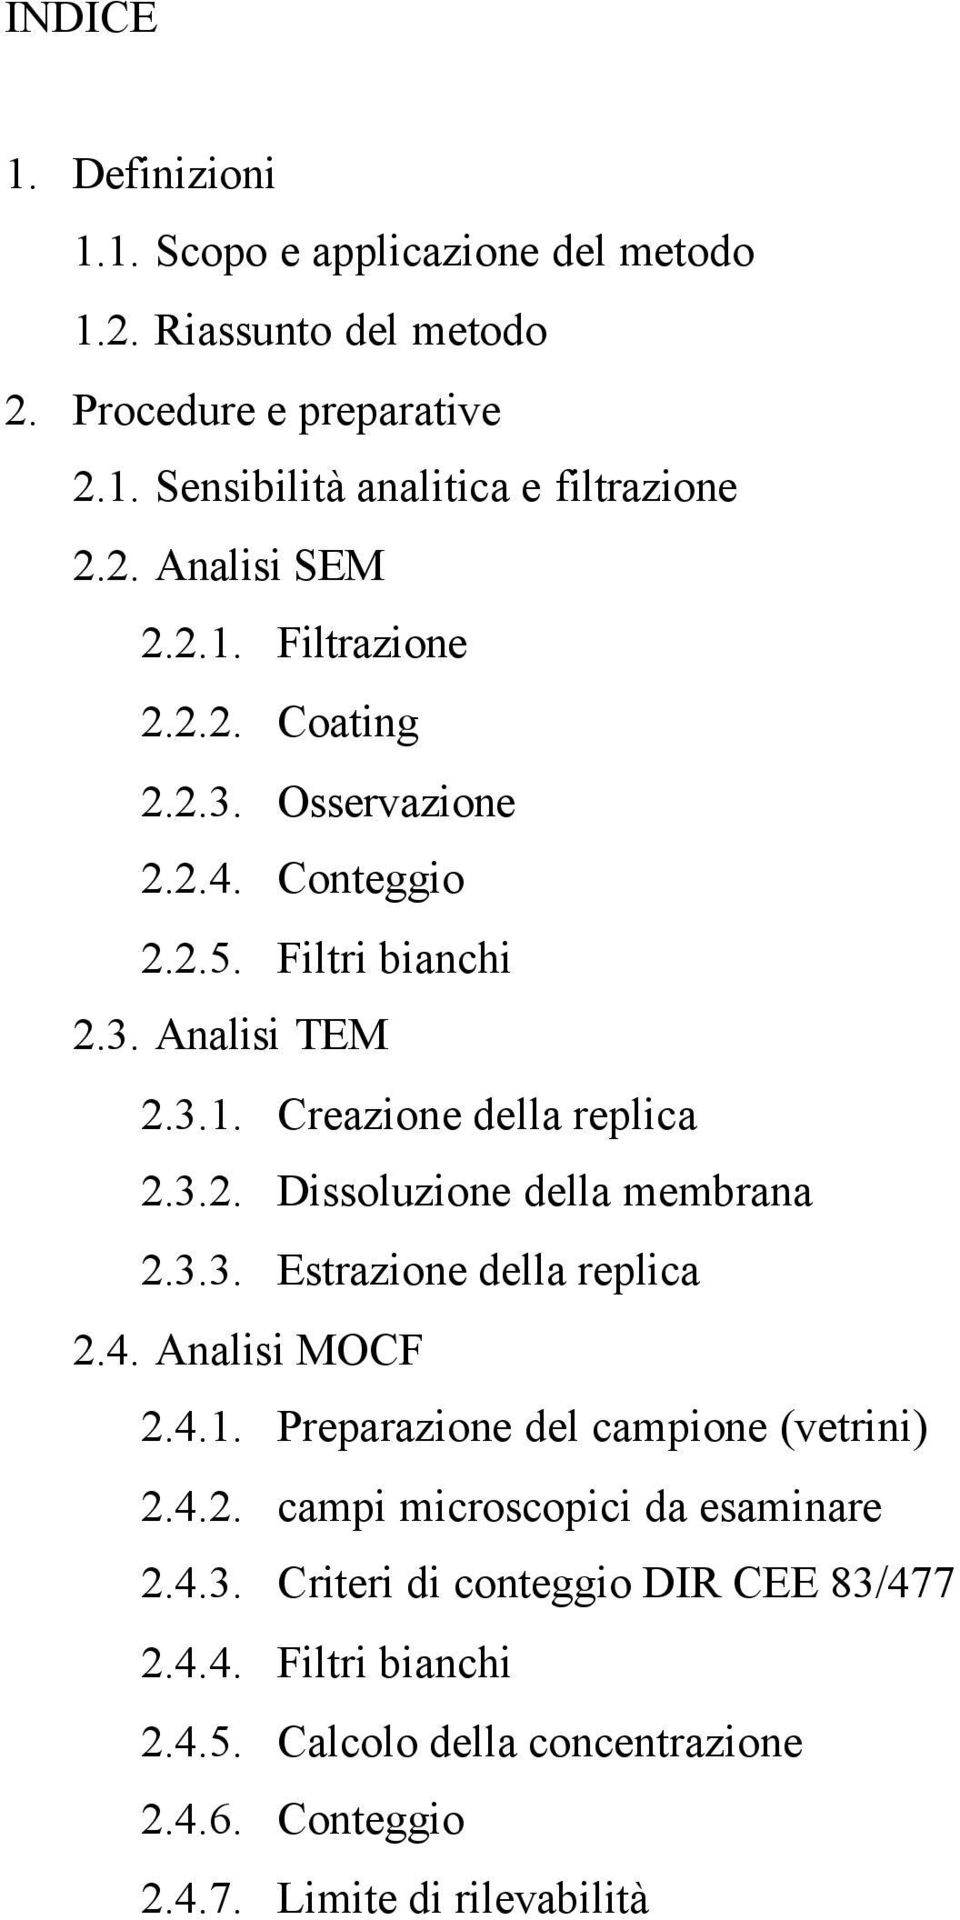 3.3. Estrazione della replica 2.4. Analisi MOCF 2.4.1. Preparazione del campione (vetrini) 2.4.2. campi microscopici da esaminare 2.4.3. Criteri di conteggio DIR CEE 83/477 2.